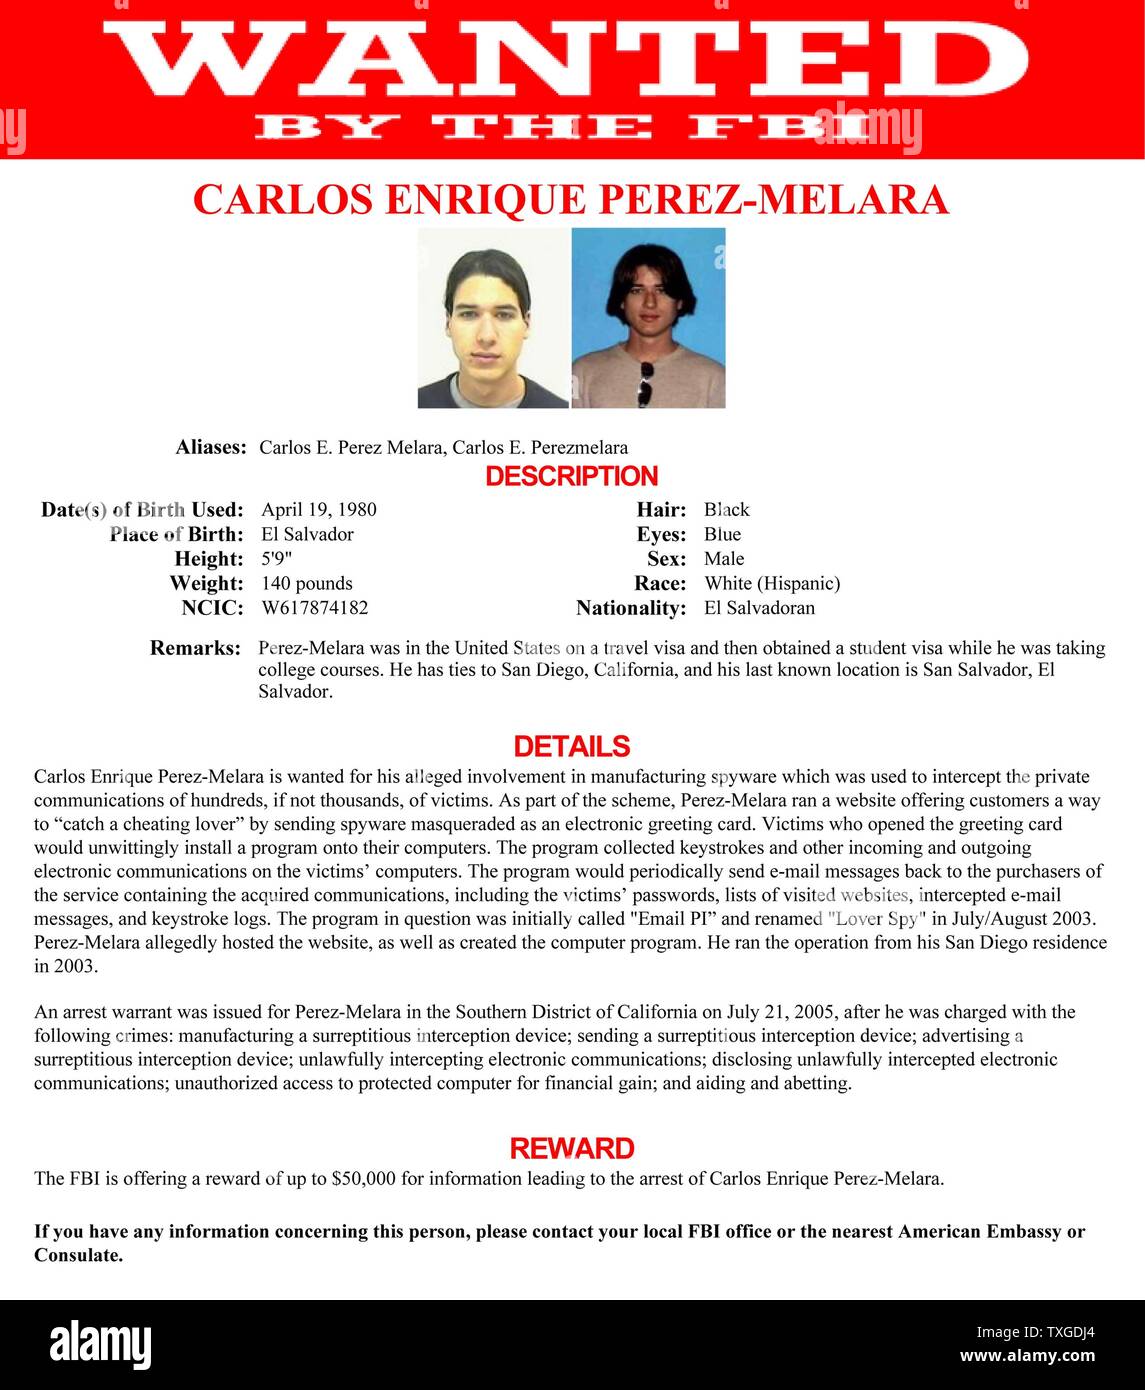 Gesuchter Bekanntmachung ausgestellt durch das FBI für Carlos Enrique Perez-Melara (1980-) wollte für seine angebliche Beteiligung an Herstellung Spyware. Datierte 2013 Stockfoto